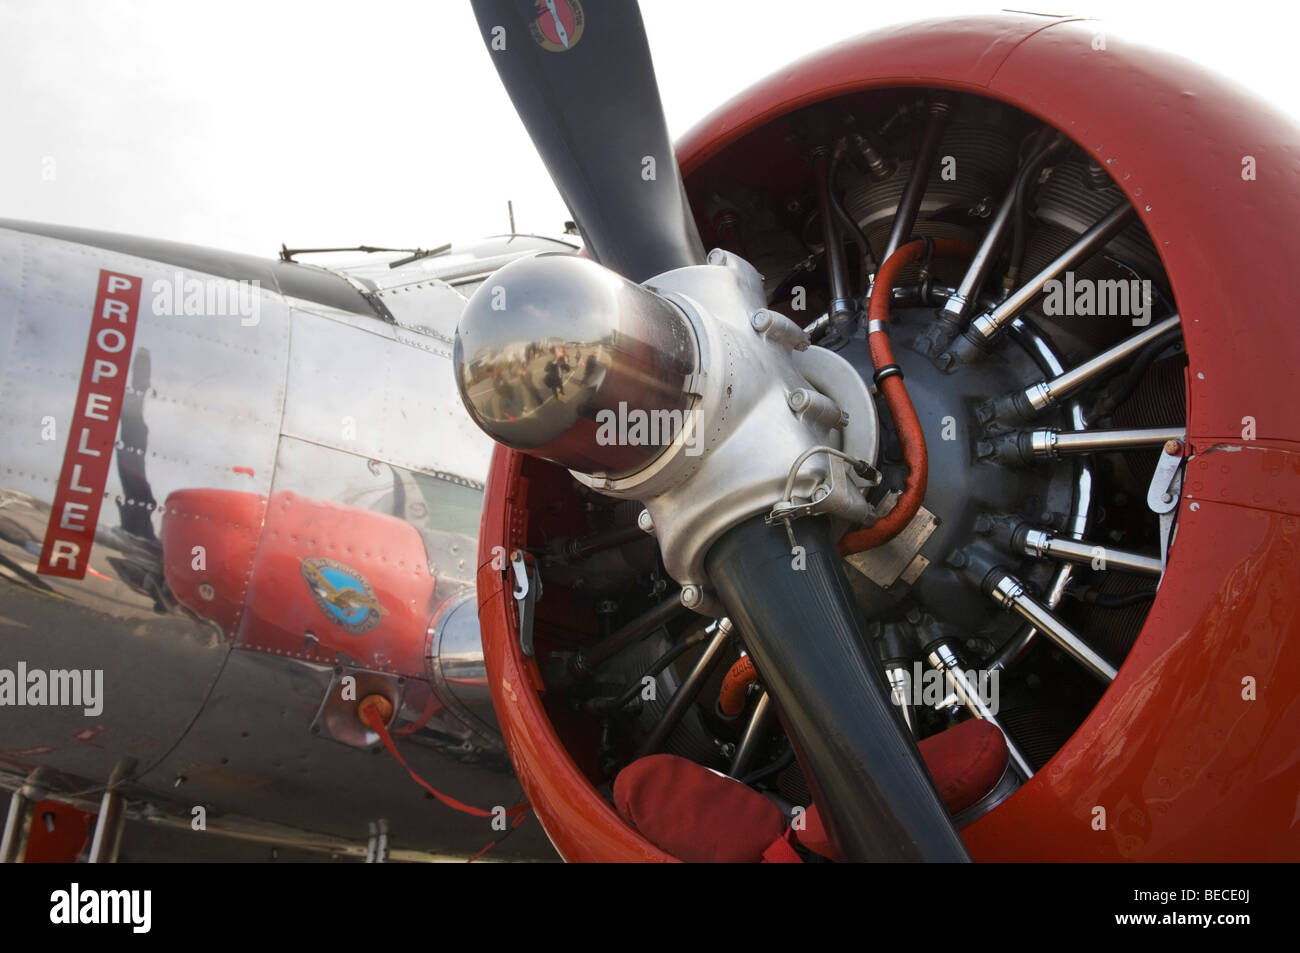 Bimotore aereo vintage, dettaglio, vista del motore radiale con albero di trasmissione Foto Stock